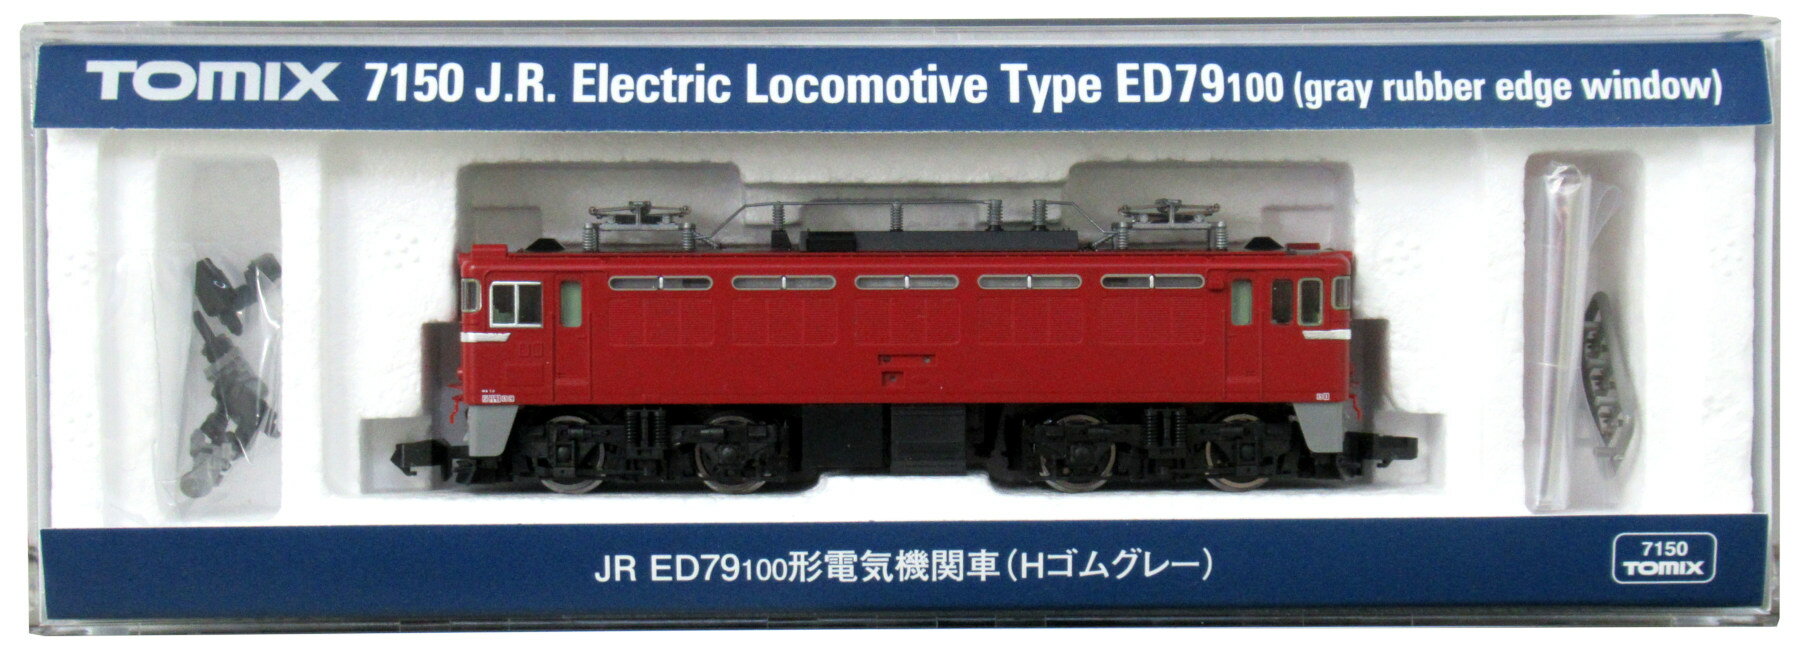 【中古】Nゲージ TOMIX(トミックス) 7150 JR ED79-100形 電気機関車 (Hゴムグレー) 【A】